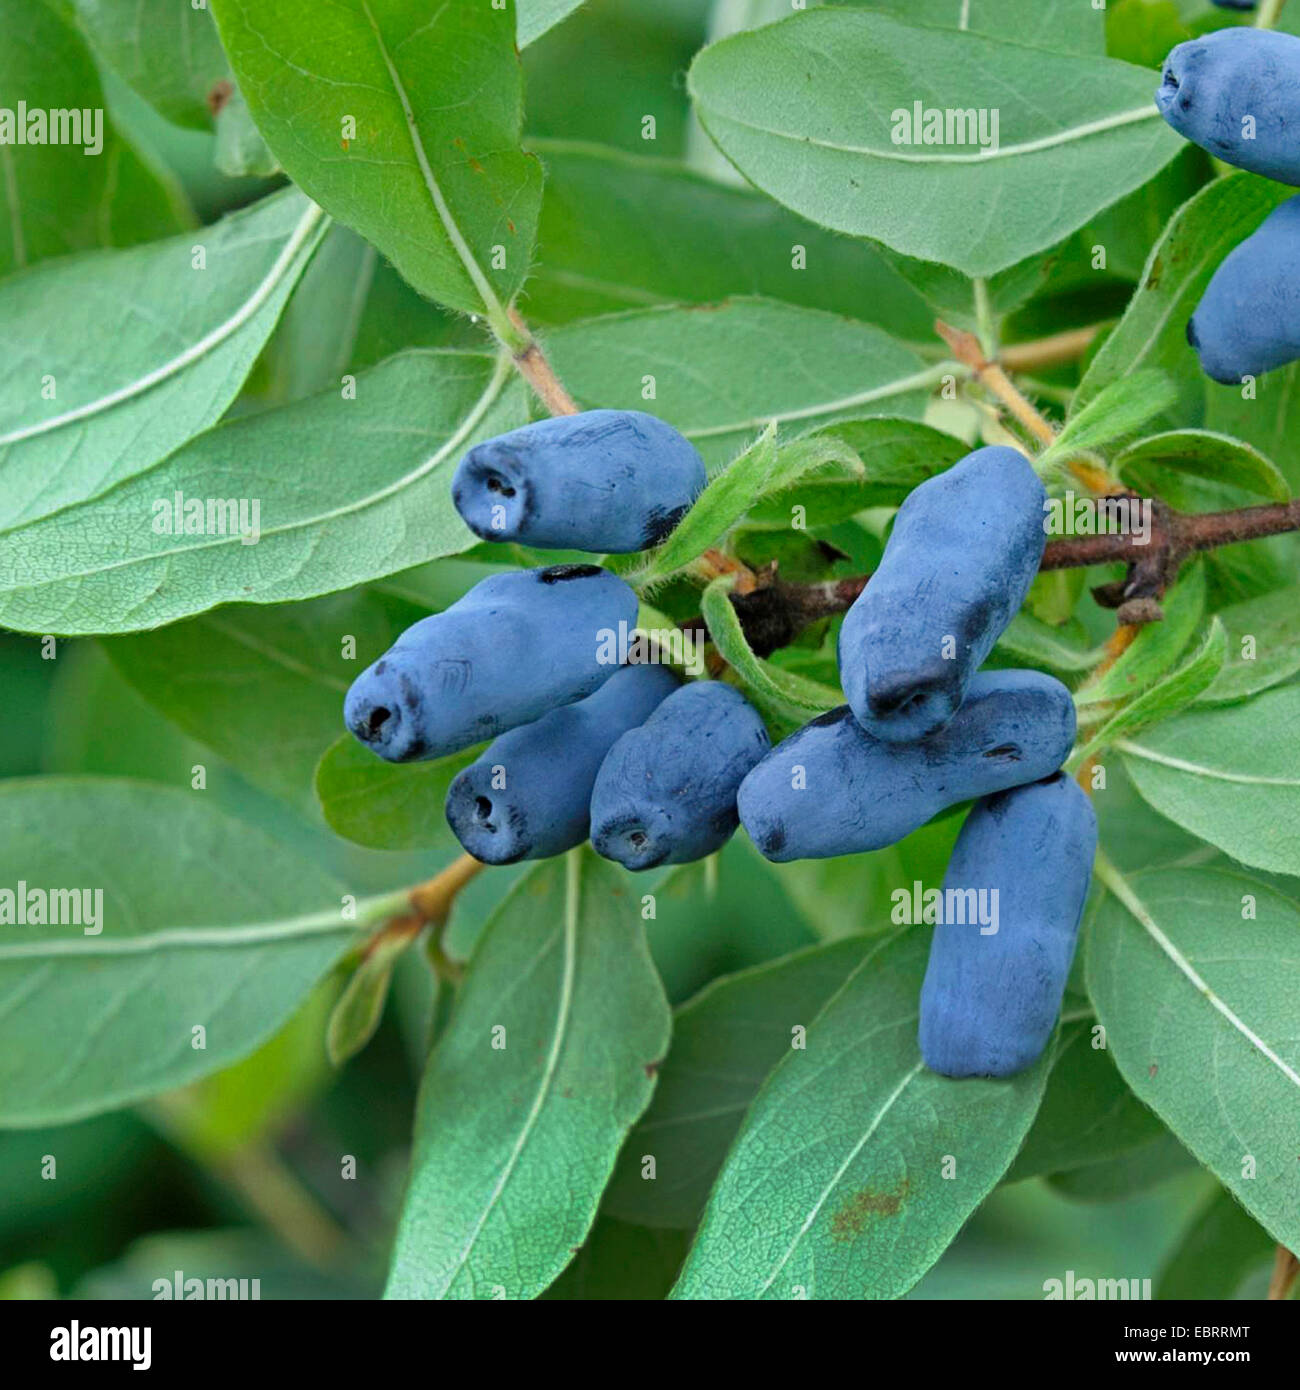 Chèvrefeuille bleu (Lonicera caerulea var. kamtschatica), fruits de var. kamtschatica Banque D'Images